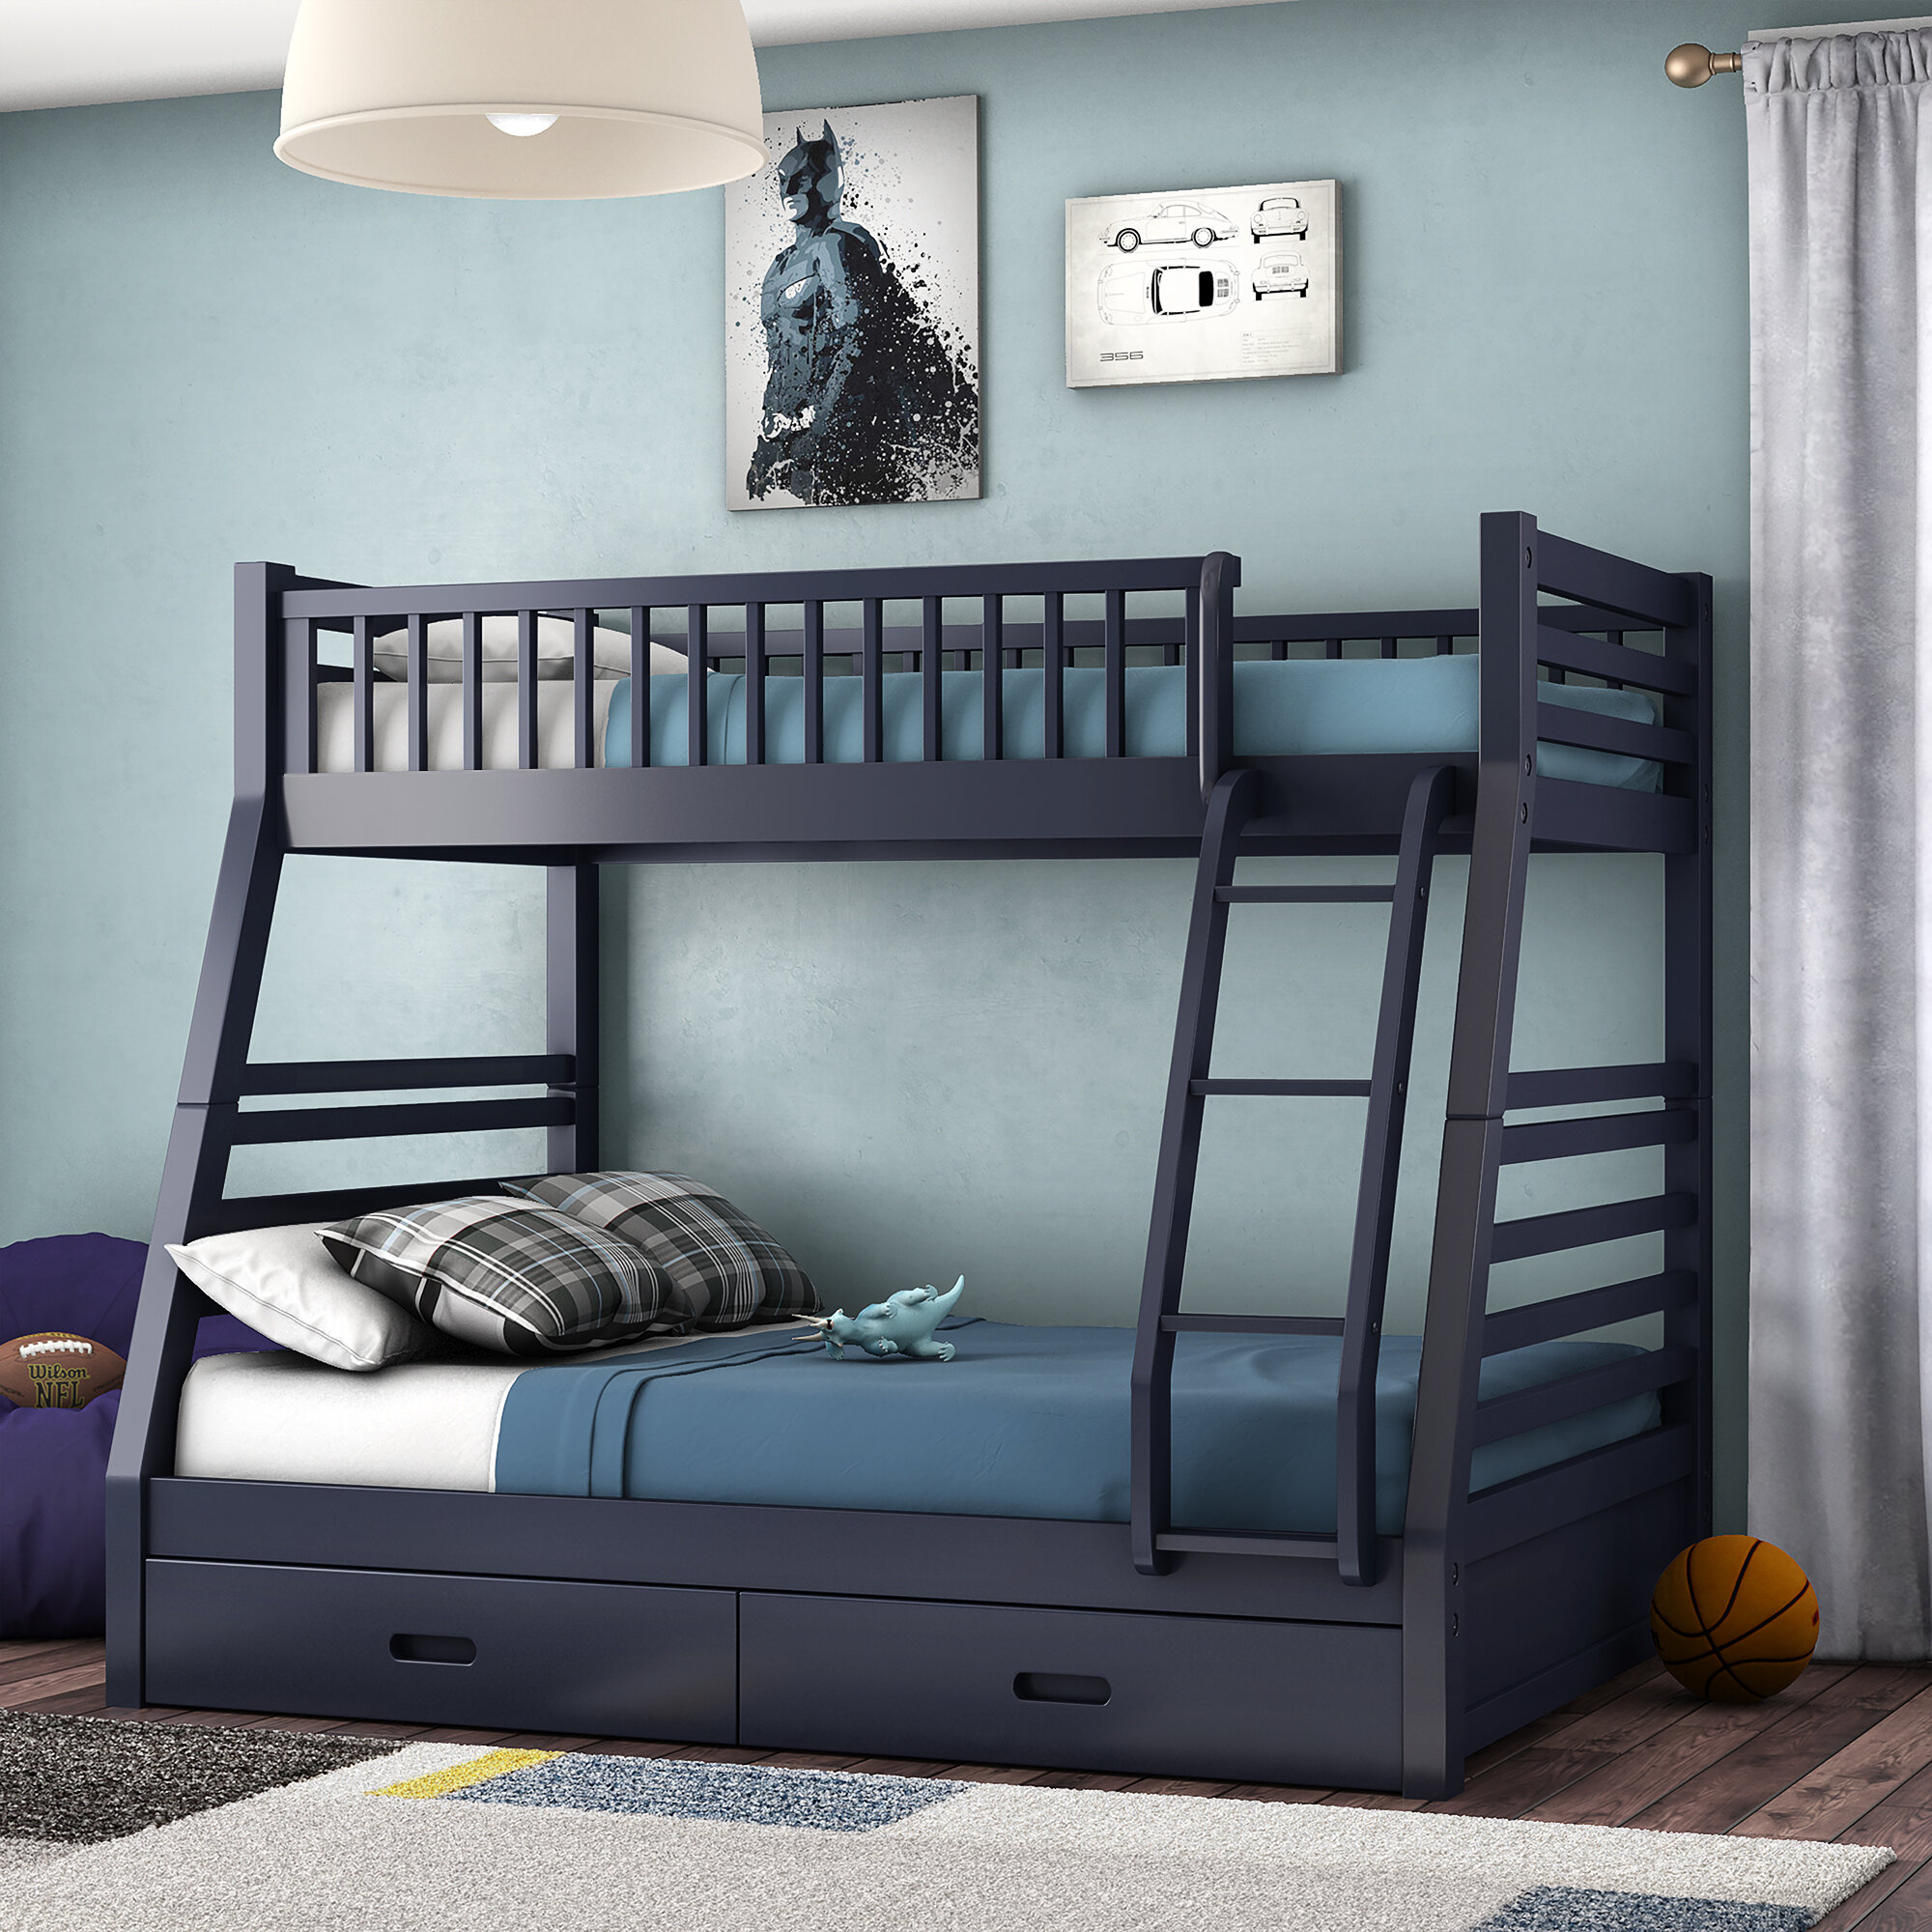 Двухъярусная кровать для подростков